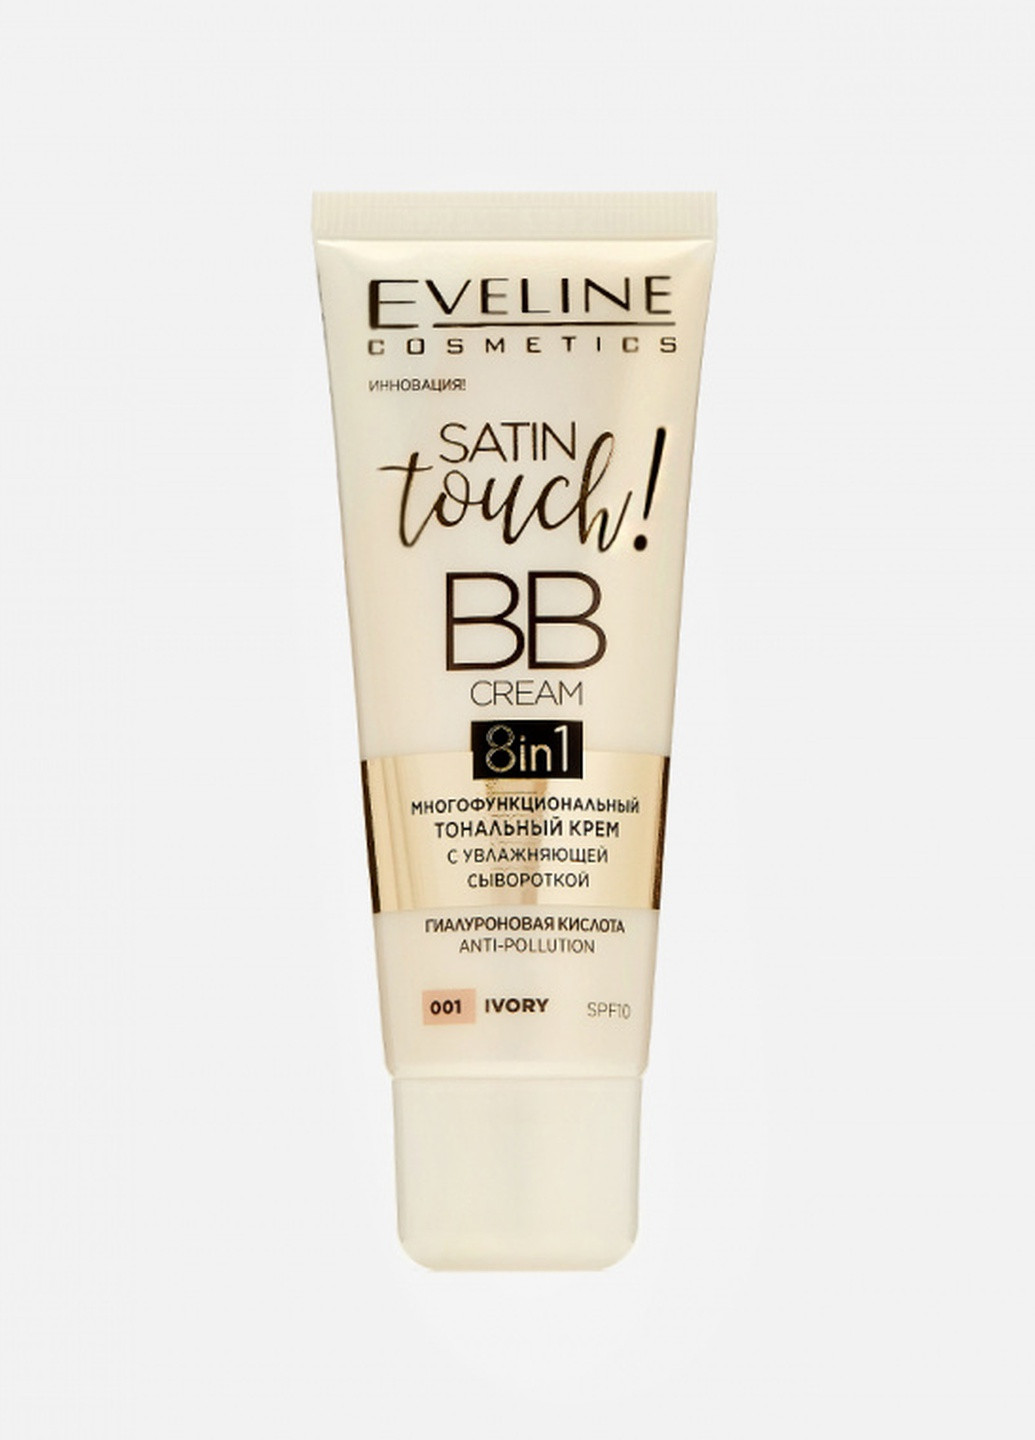 Тональный крем eveline satin touch bb cream 8in1, тон 002 beige, 30мл Eveline Cosmetics 5903416029144 (256107103)